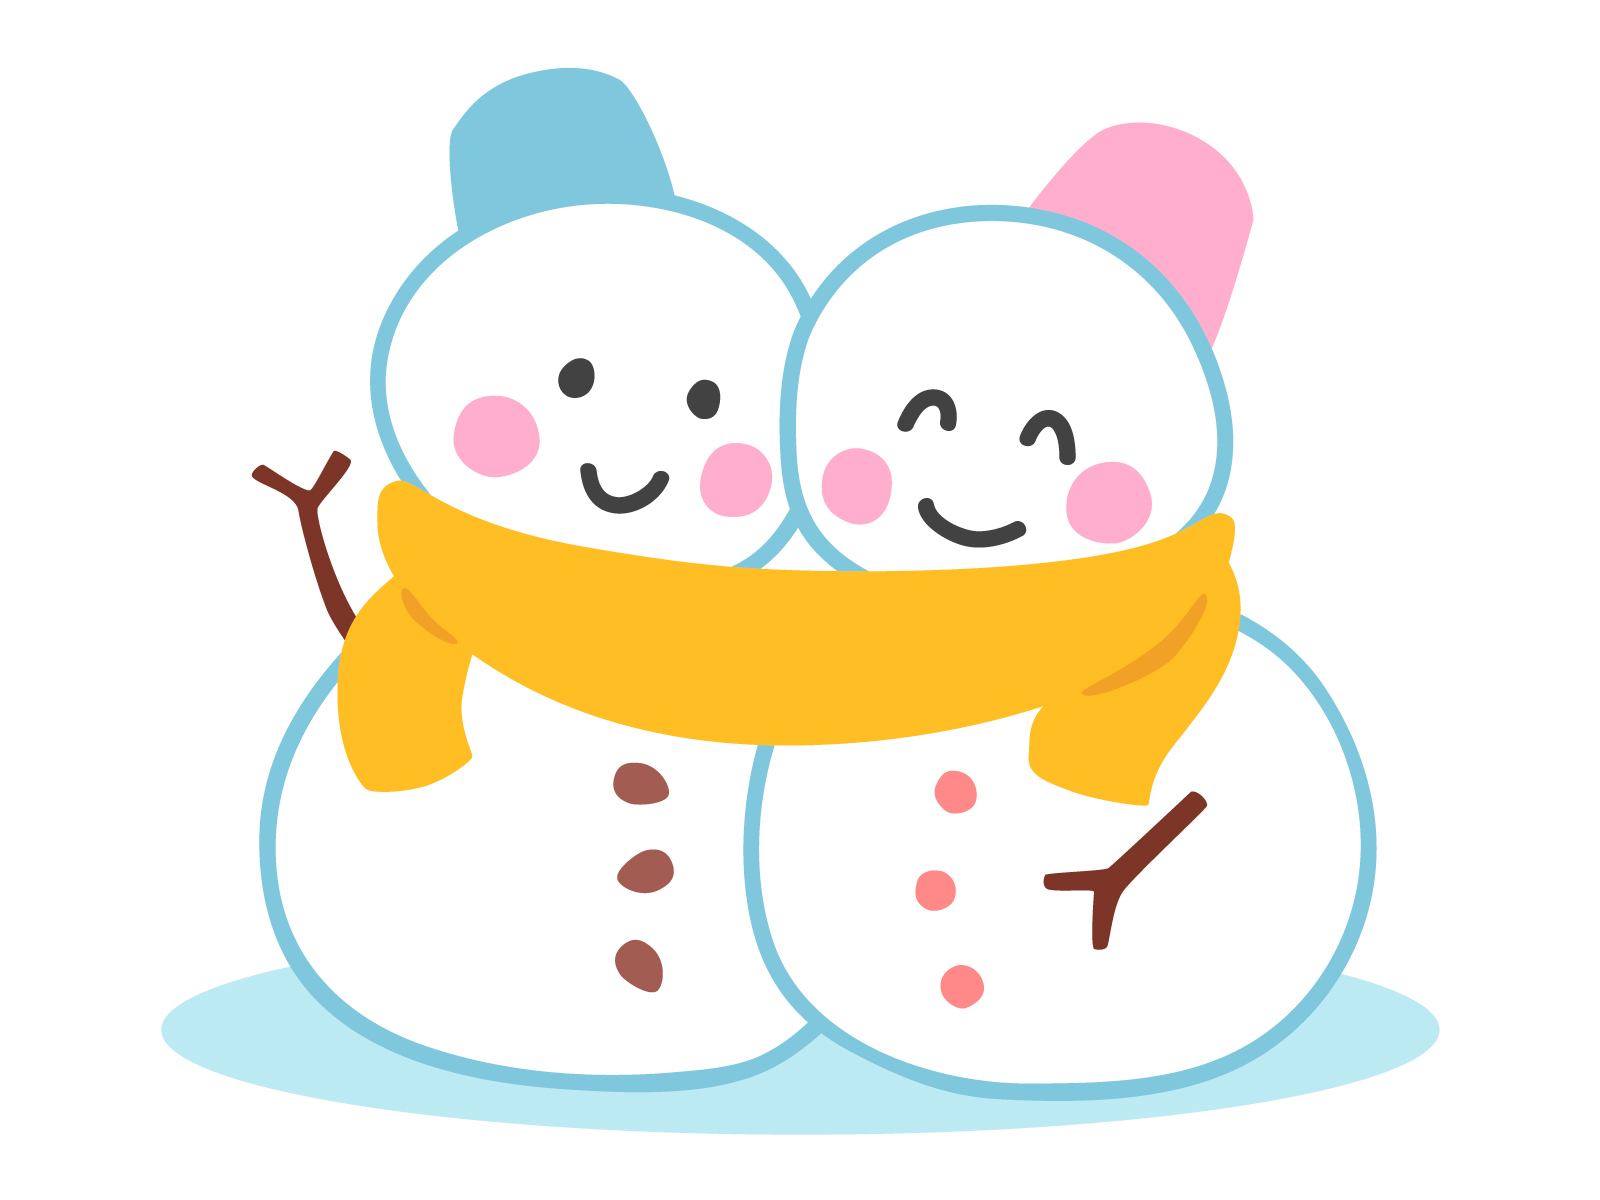 1月26日に「マキノウインターフェスティバル」開催☆ビンゴ大会・雪中宝探し・ジェラート早食い・雪上バナナボートなど♪